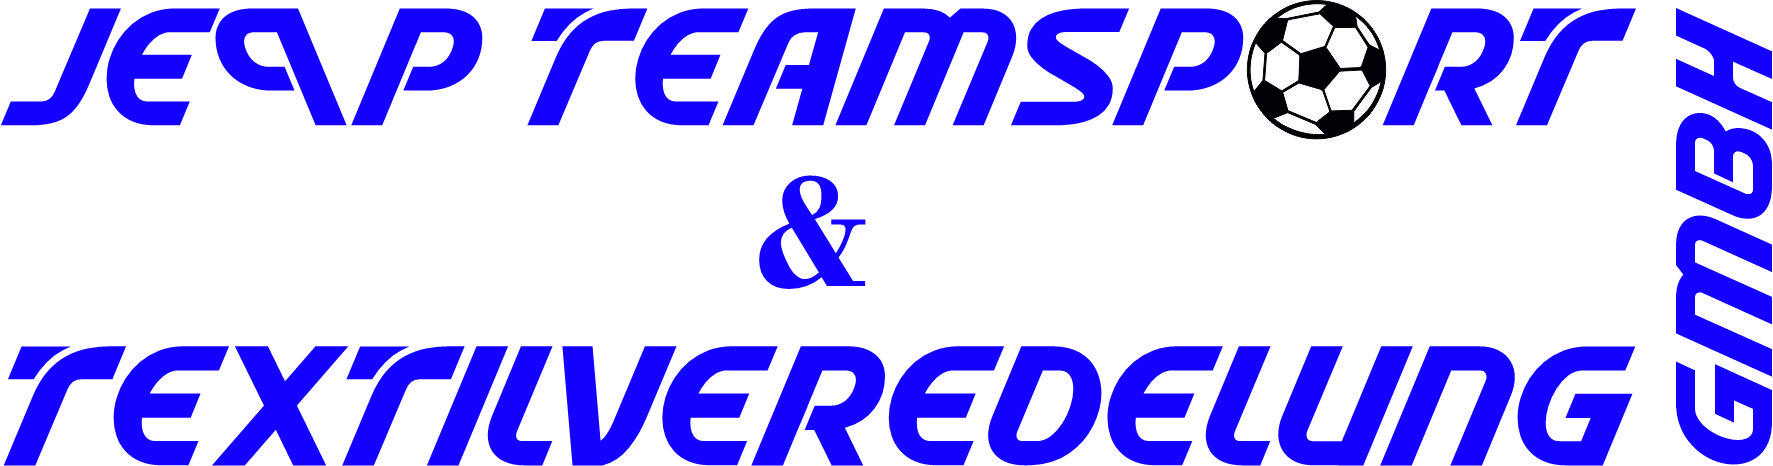 SV Treptow 46 e.V. Logo 2